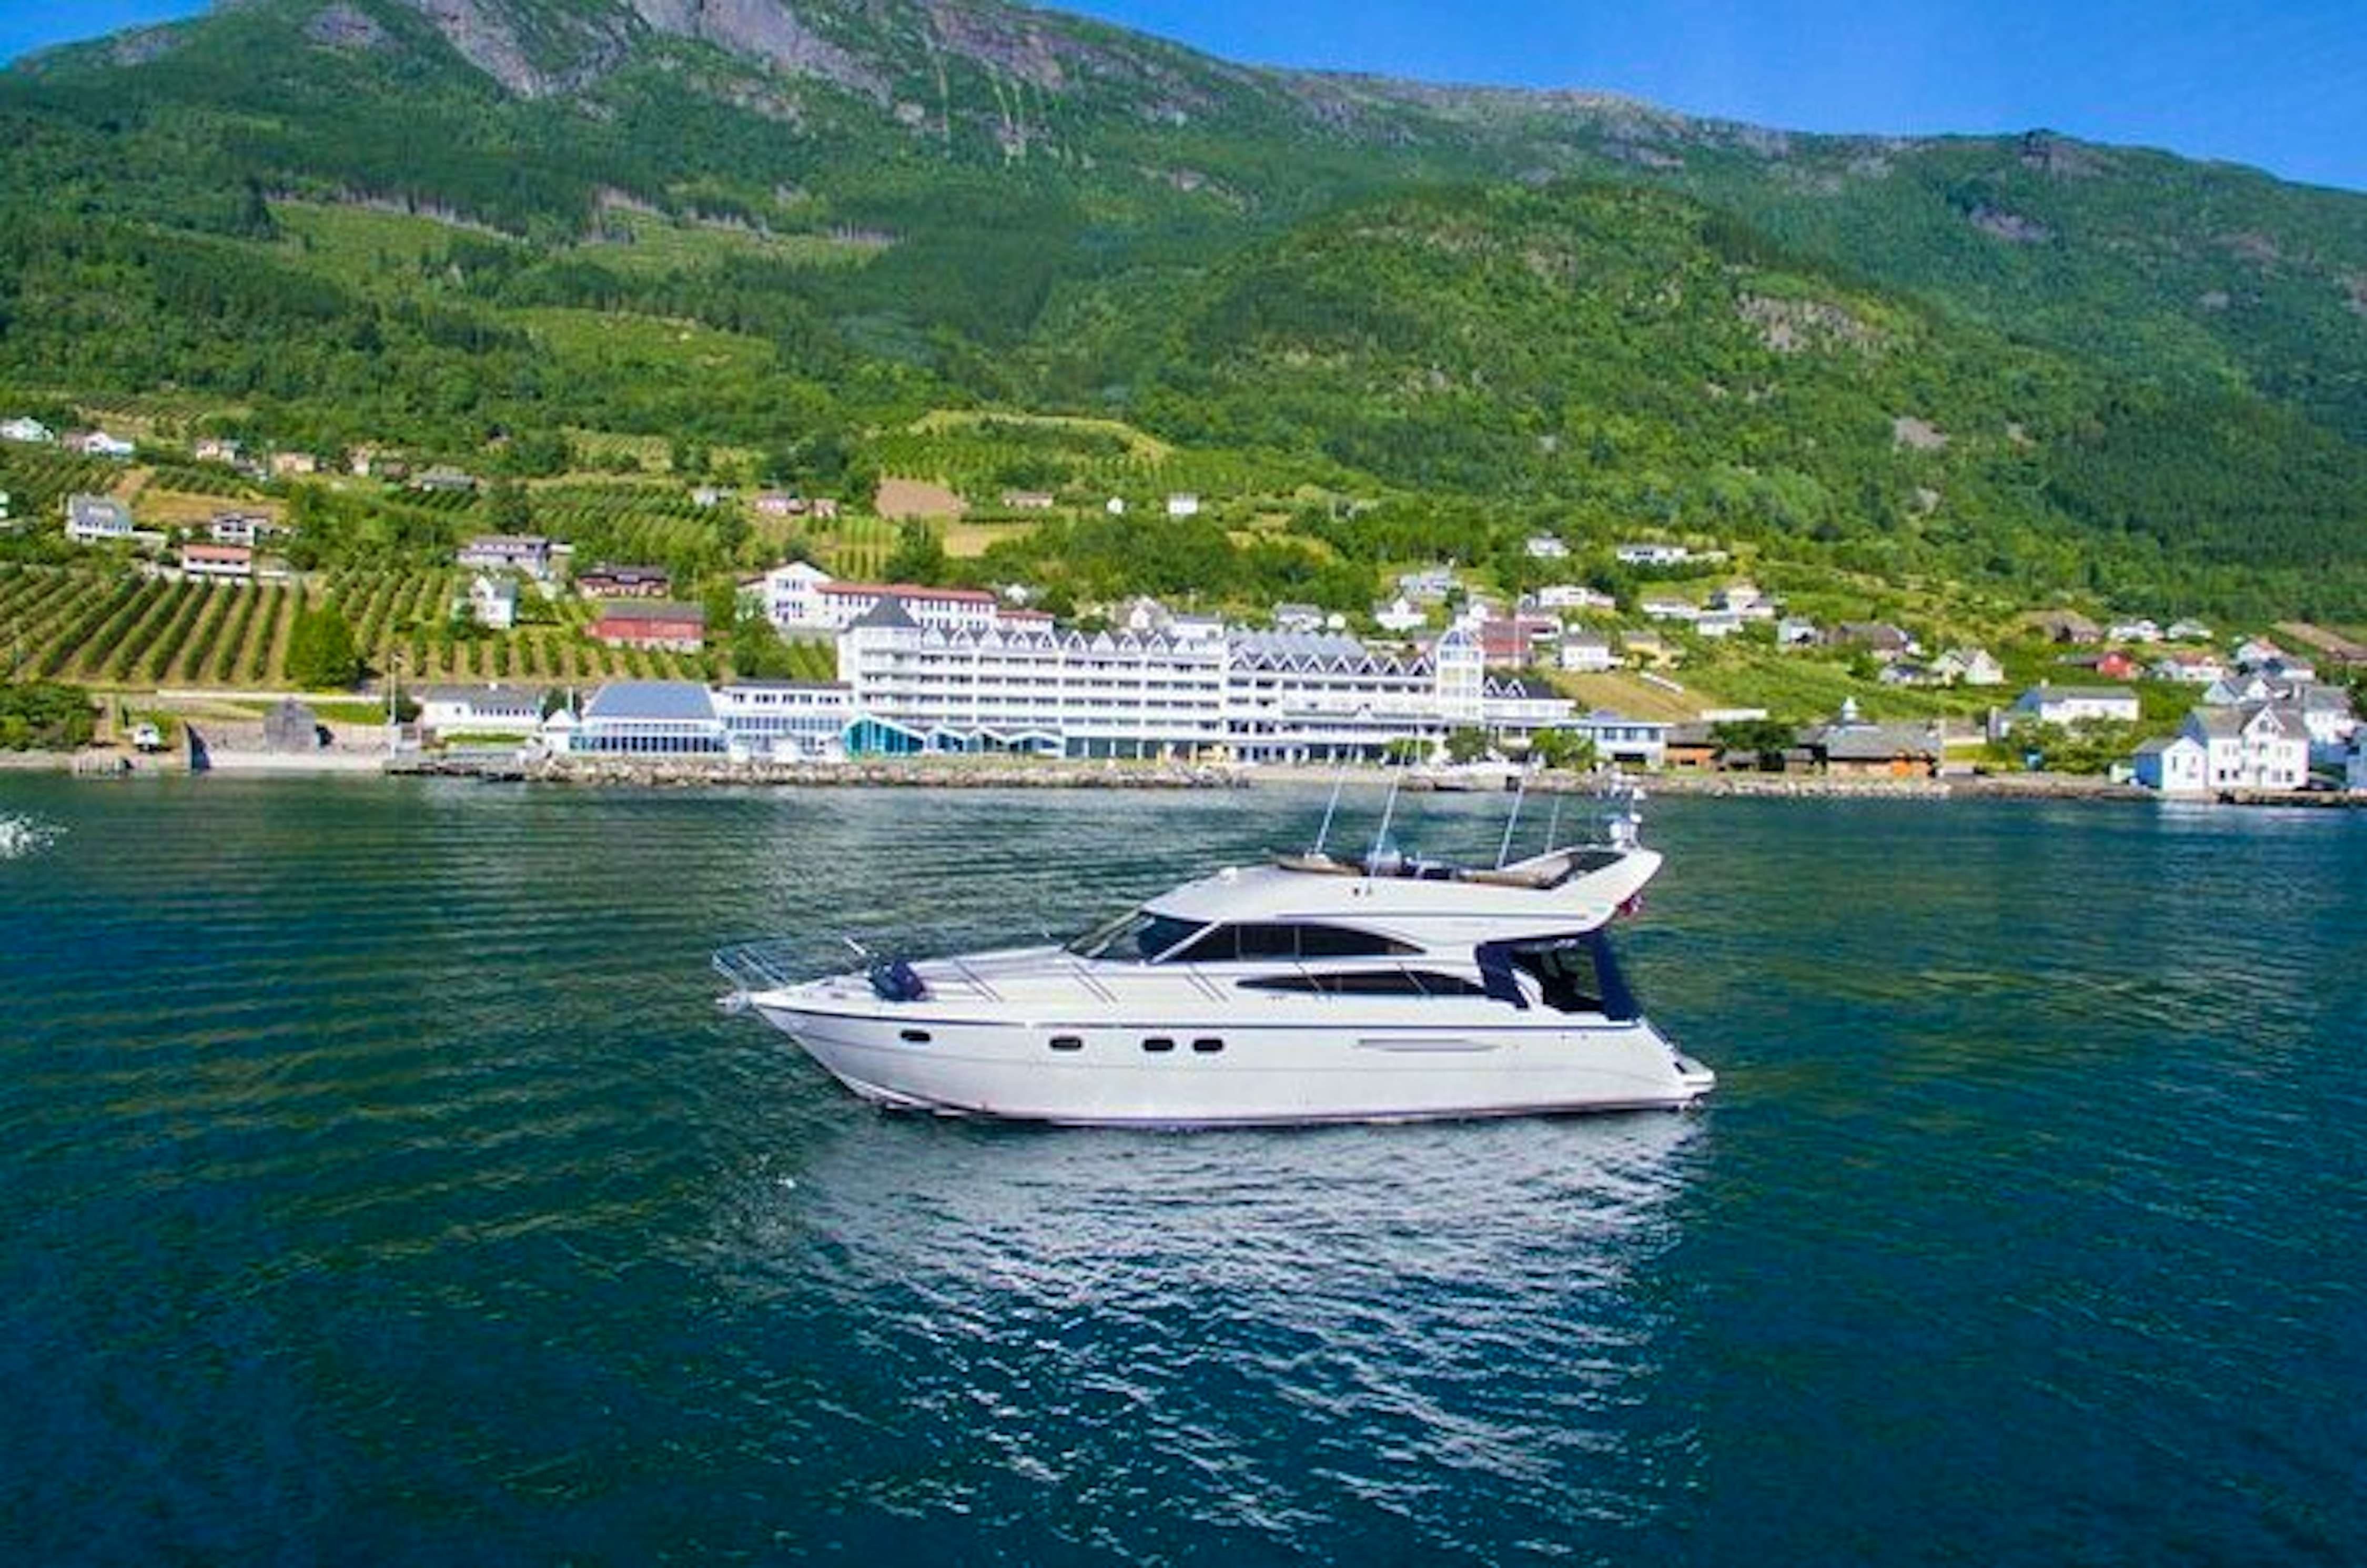 bergen to hardangerfjord cruise